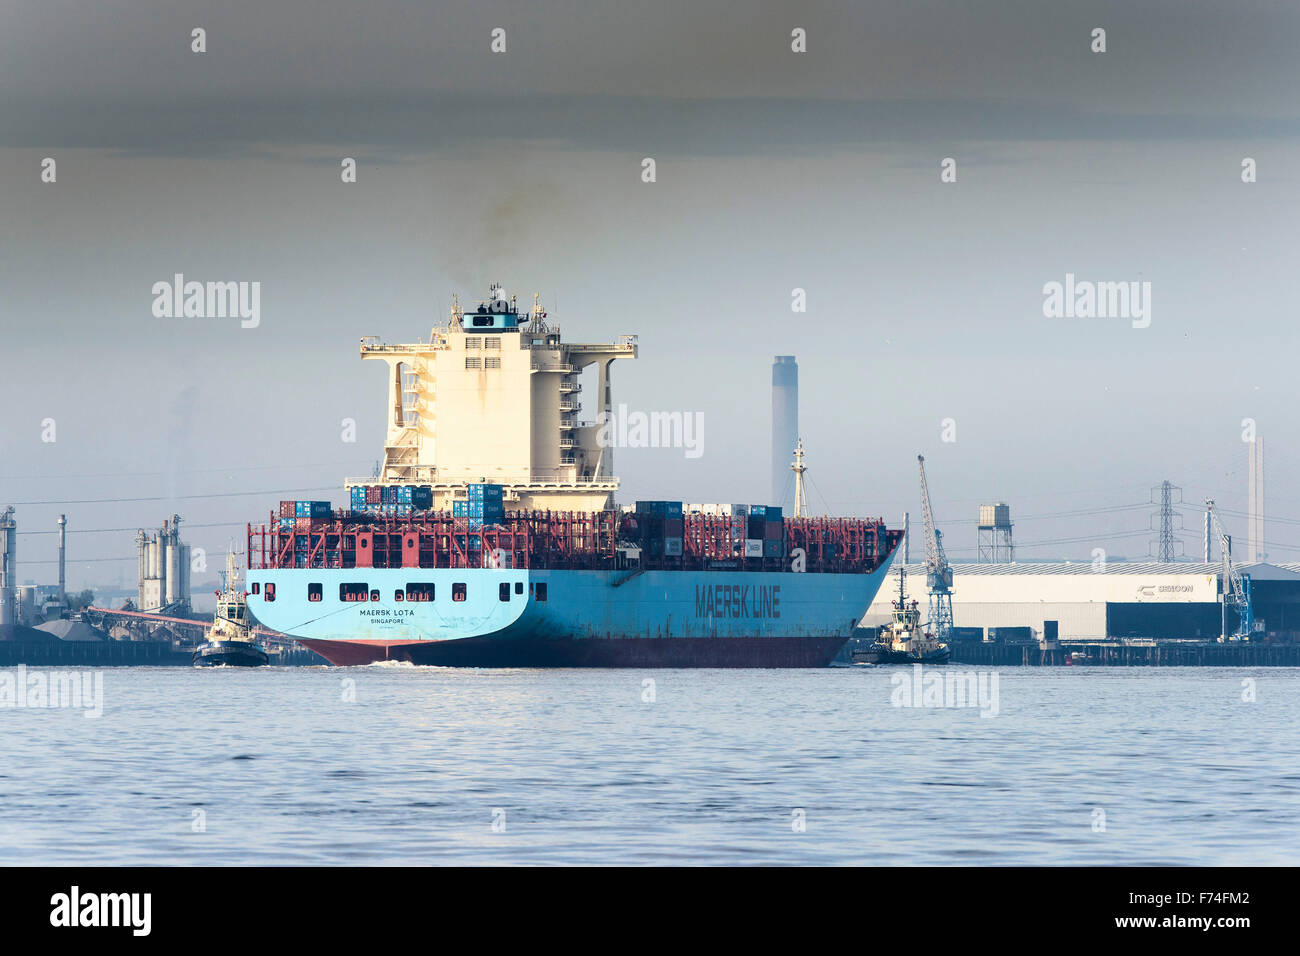 Il contenitore nave Maersk Lota circa per entrare Tilbury porta sul fiume Tamigi. Foto Stock